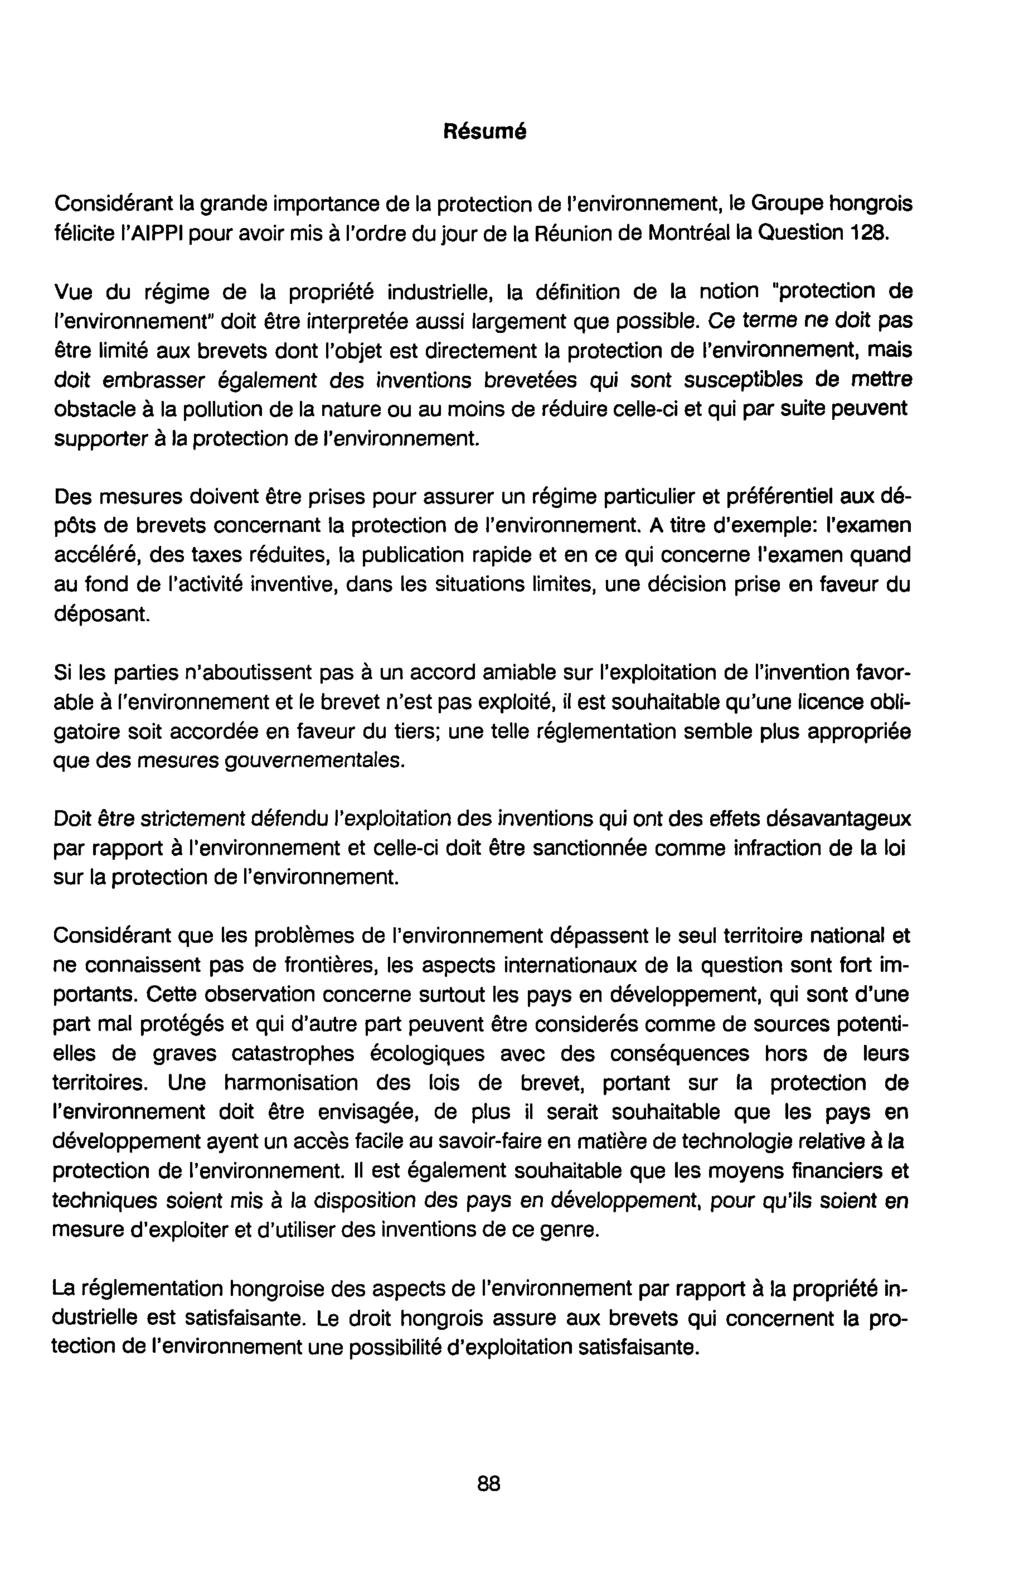 Résumé Considérant la grande importance de la protection de l'environnement, le Groupe hongrois félicite l'aippi pour avoir mis à l'ordre du jour de la Réunion de Montréal la Question 128.